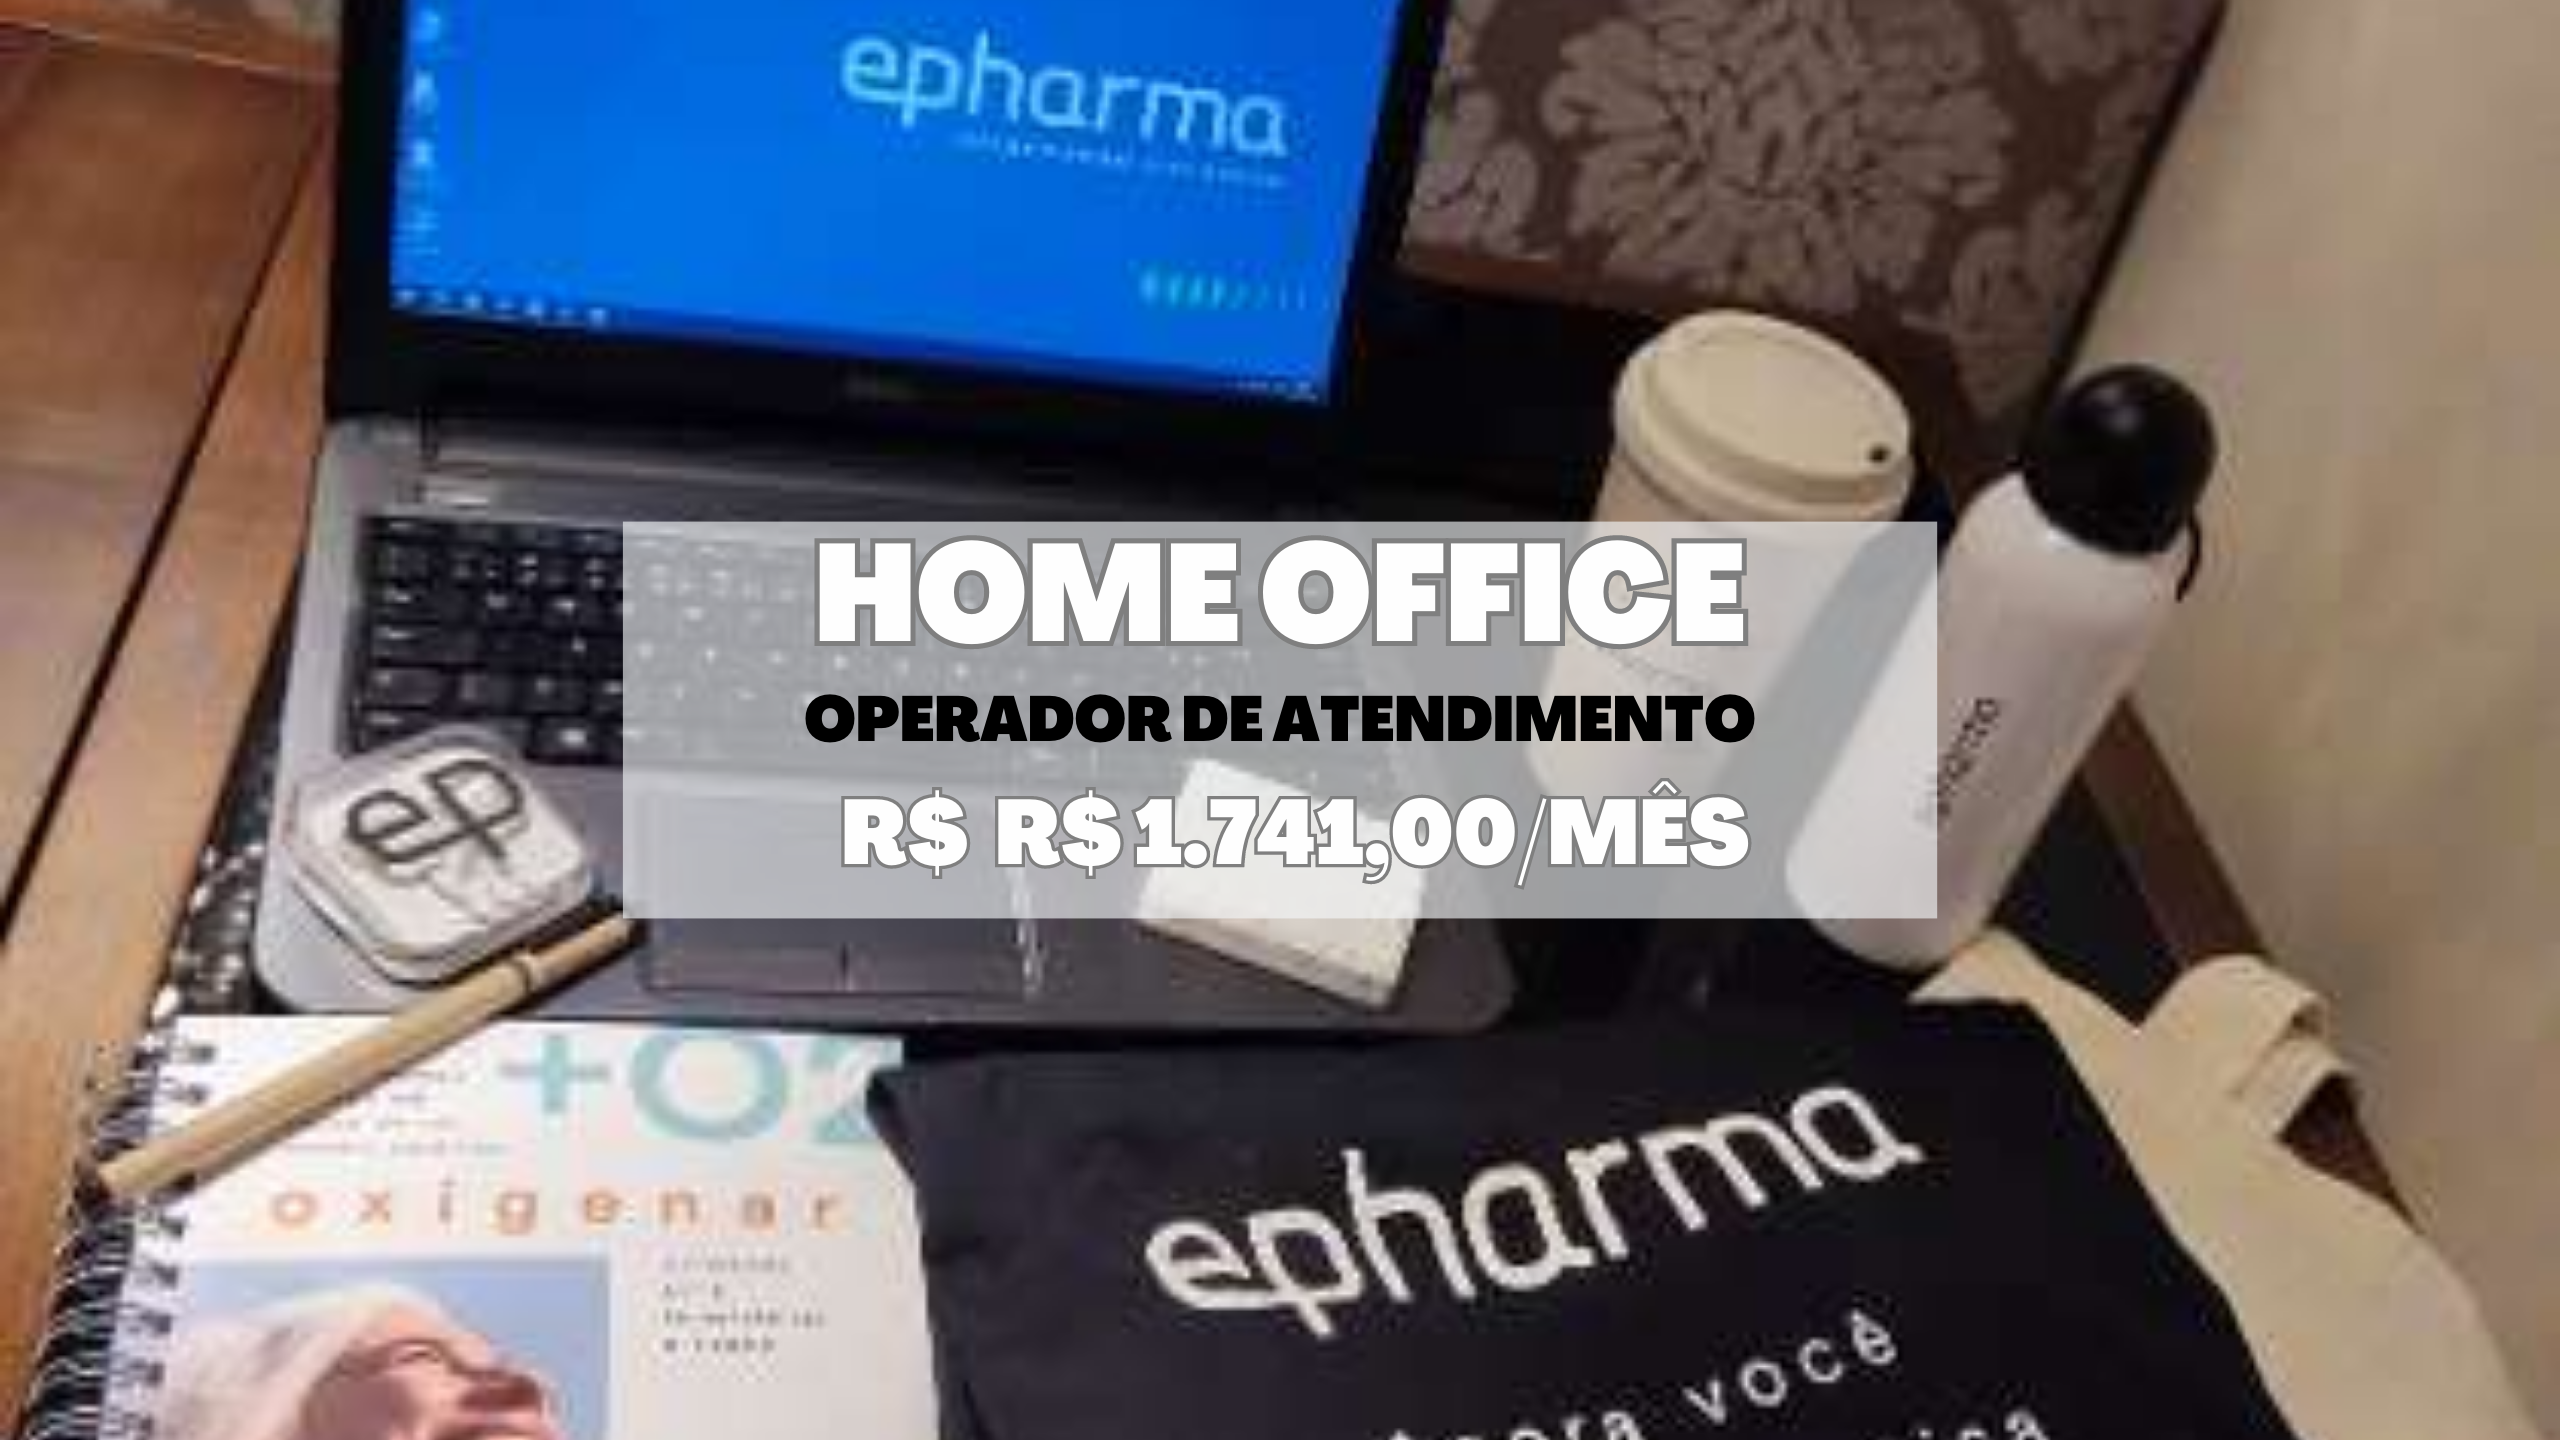 Epharmer abre vaga HOME OFFICE para Operador de Atendimento com salário de R$ 1.741,00